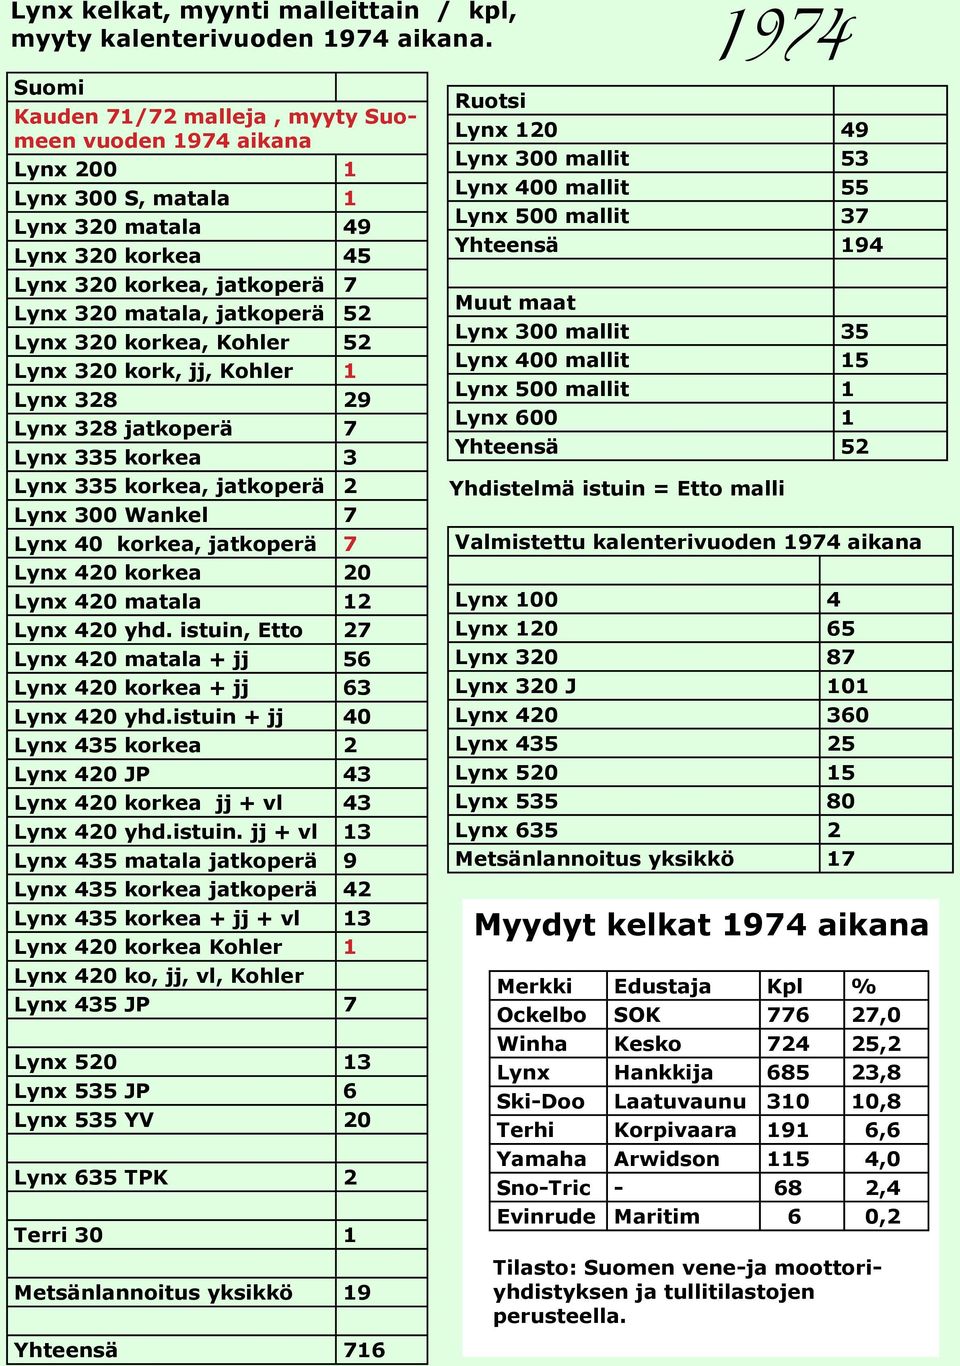 535 JP 6 Lynx Vuotsolaiset 535 YV Suksimuovit Ohjainkiskot 20 603 Yhteensä 716 Vuosi: 1974 Suomi Ruotsi Kauden 71/72 malleja, myyty Suomeen vuoden 1974 aikana Lynx 120 49 Lynx 300 mallit 53 Lynx 200